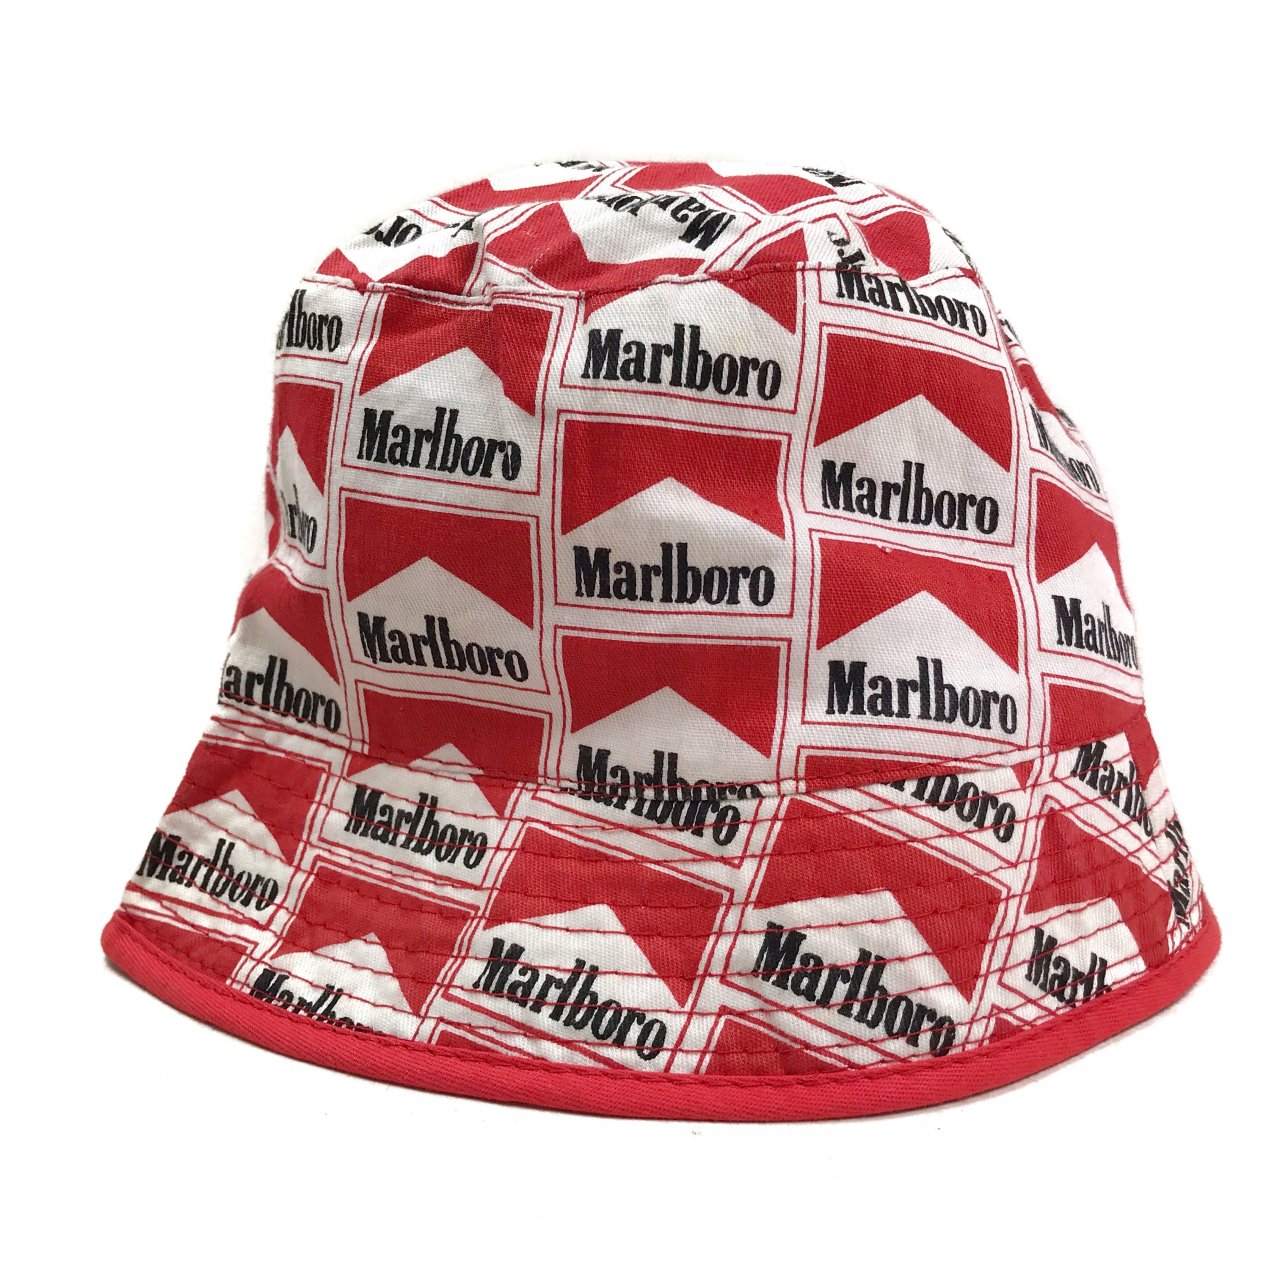 Marlboro キャップ マルボロ 企業物 ロゴ バケットハット 帽子